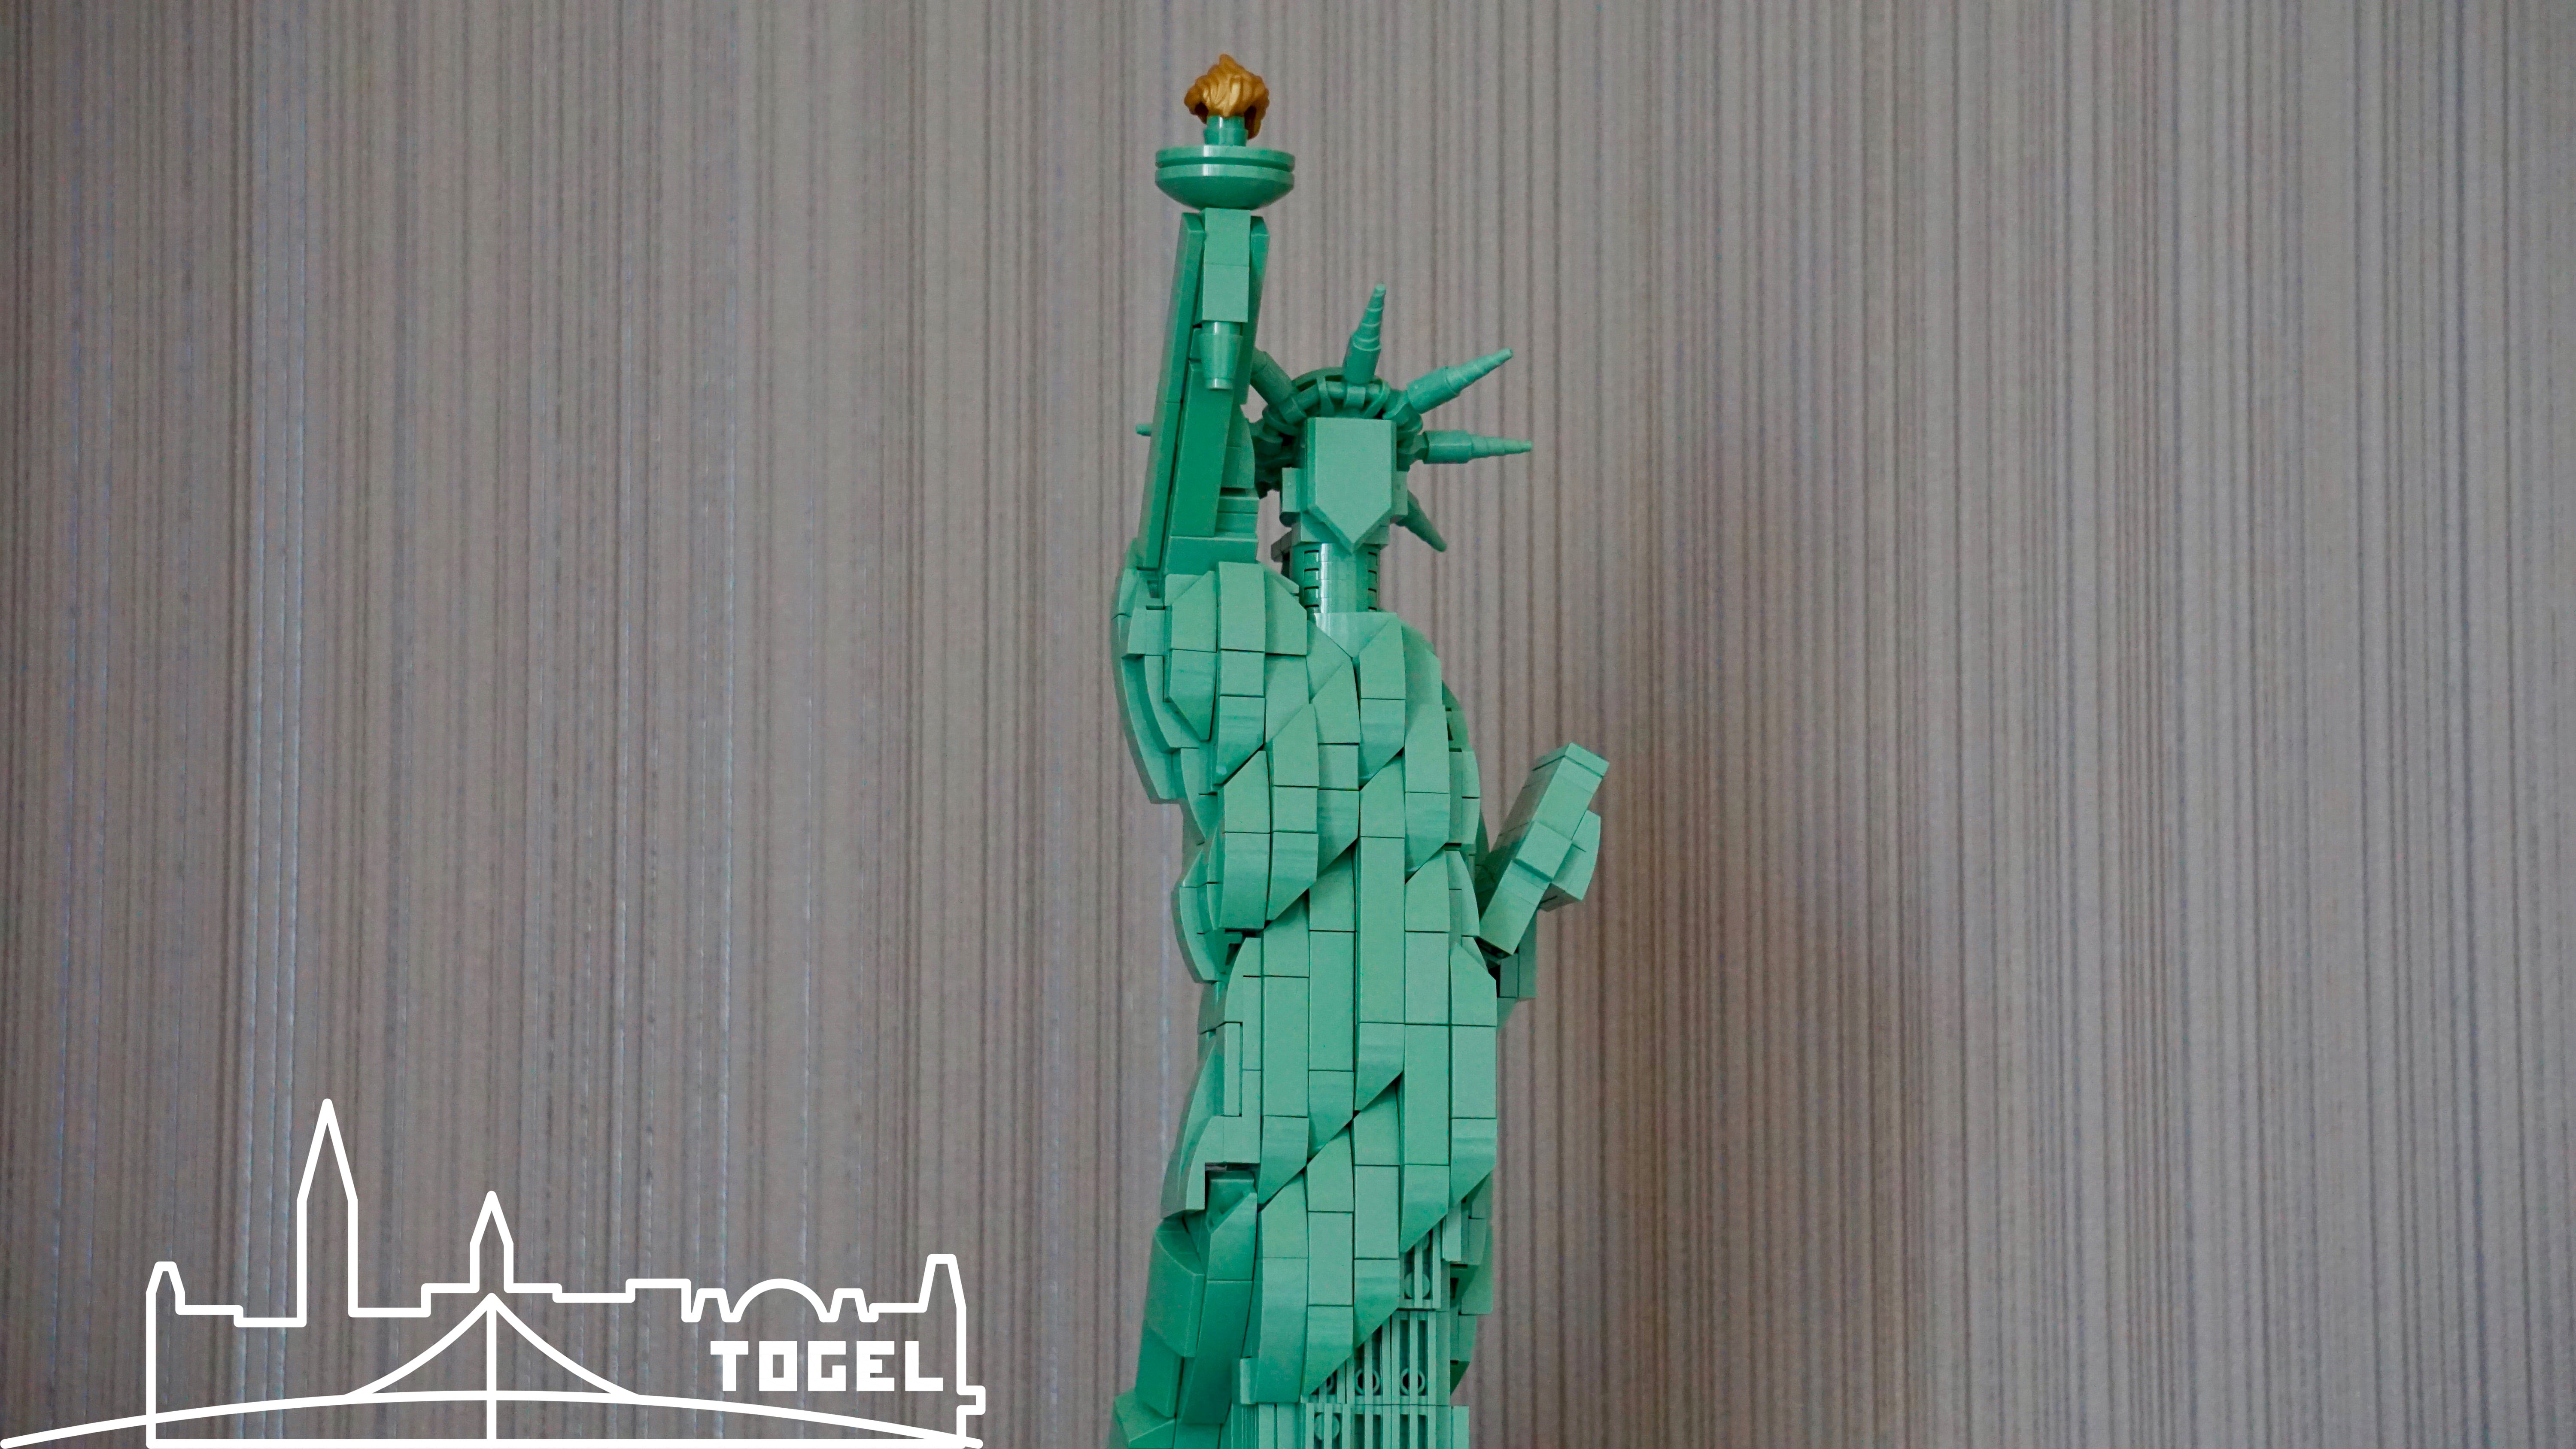 Architecture Lego 21042 Togeltown #008 - - Review Freiheitsstatue